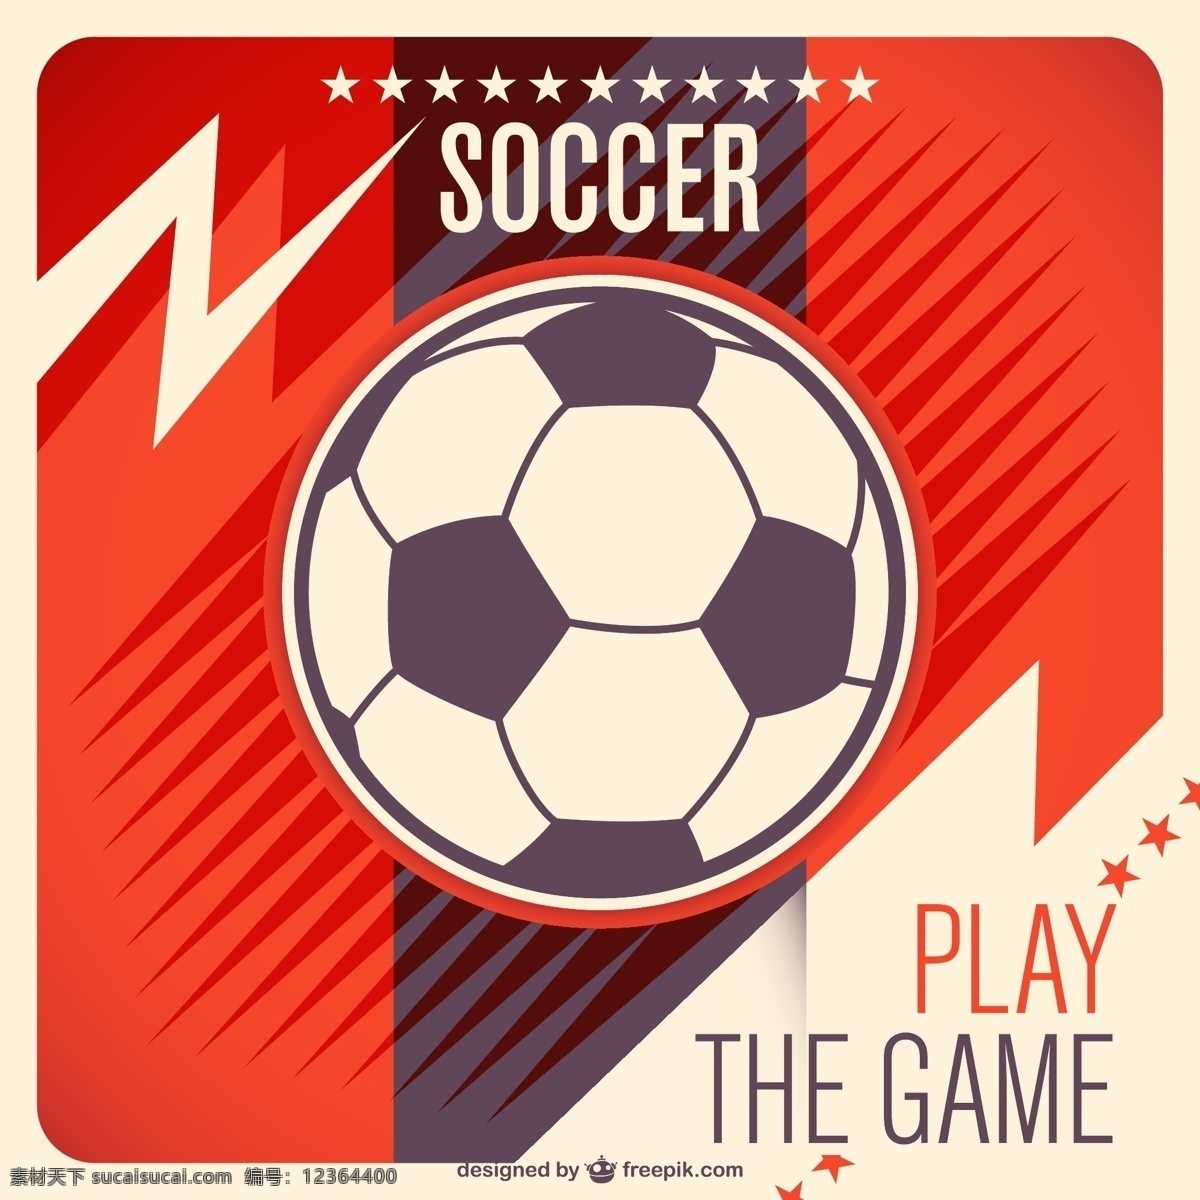 红色 足球 背景 矢量 星星 卡片 动感 世界杯 运动 体育 体育运动 赛事 比赛 插画 海报 画册 文化艺术